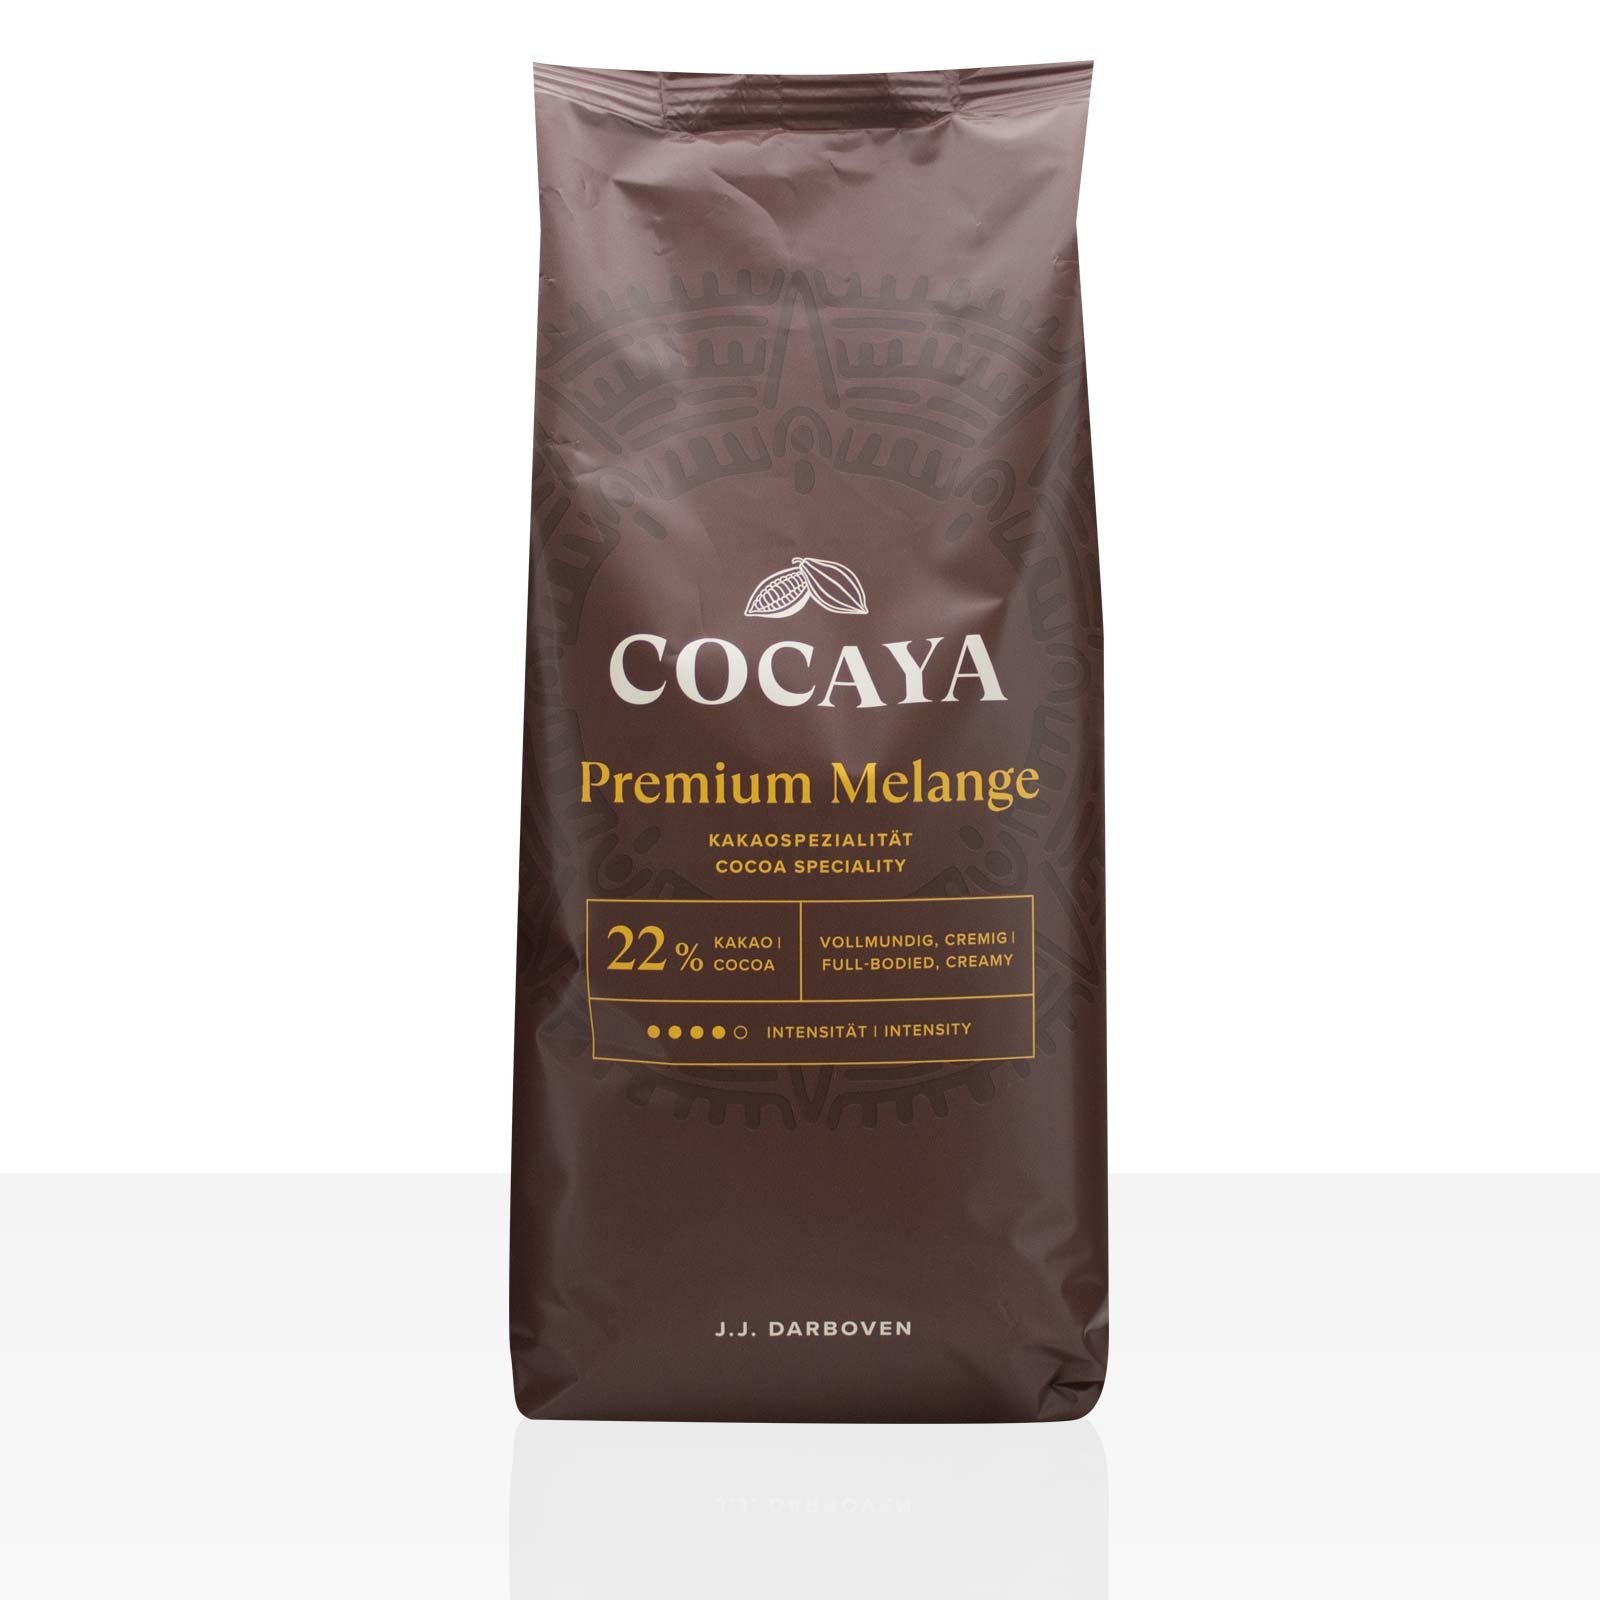 Darboven Cocaya Premium Melange Kakao 1kg, Kakaopulver 22%